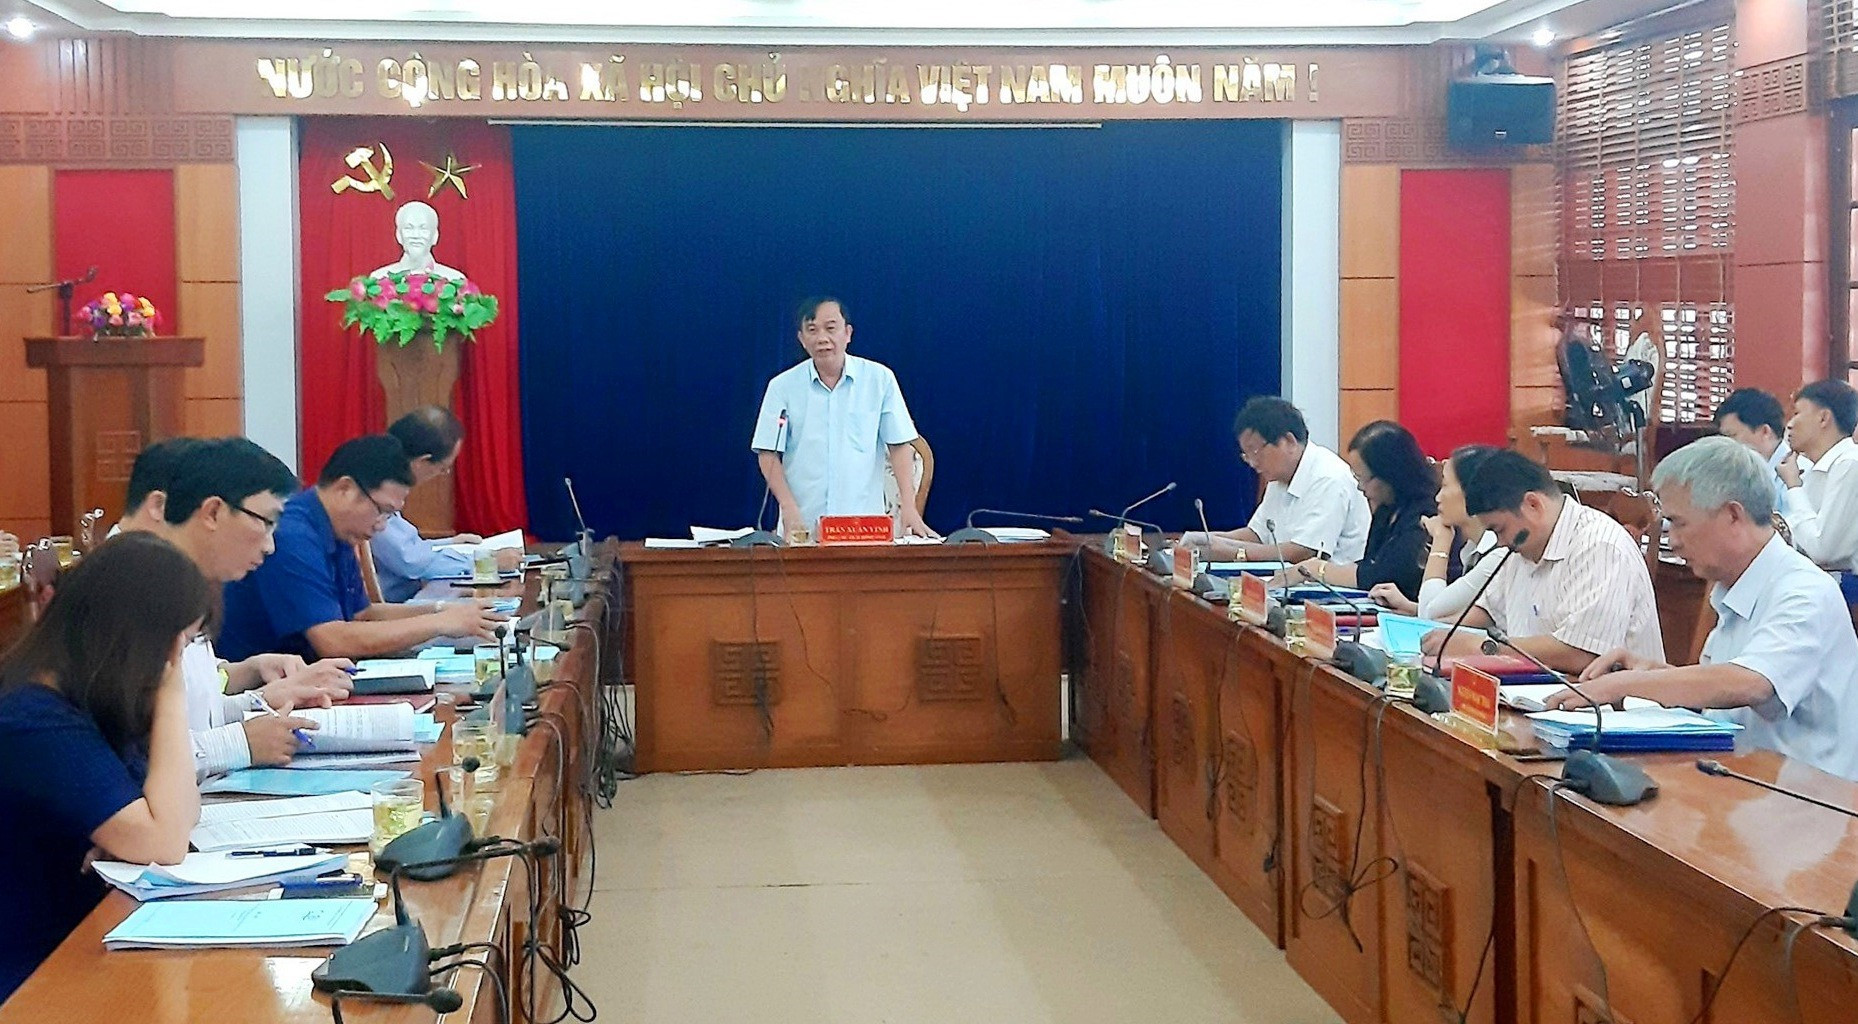 Phó Chủ tịch HĐND tỉnh Trần Xuân Vinh phát biểu tại cuộc làm việc với lãnh đạo Sở NN&PTNT vào chiều 27.11. Ảnh: VĂN SỰ